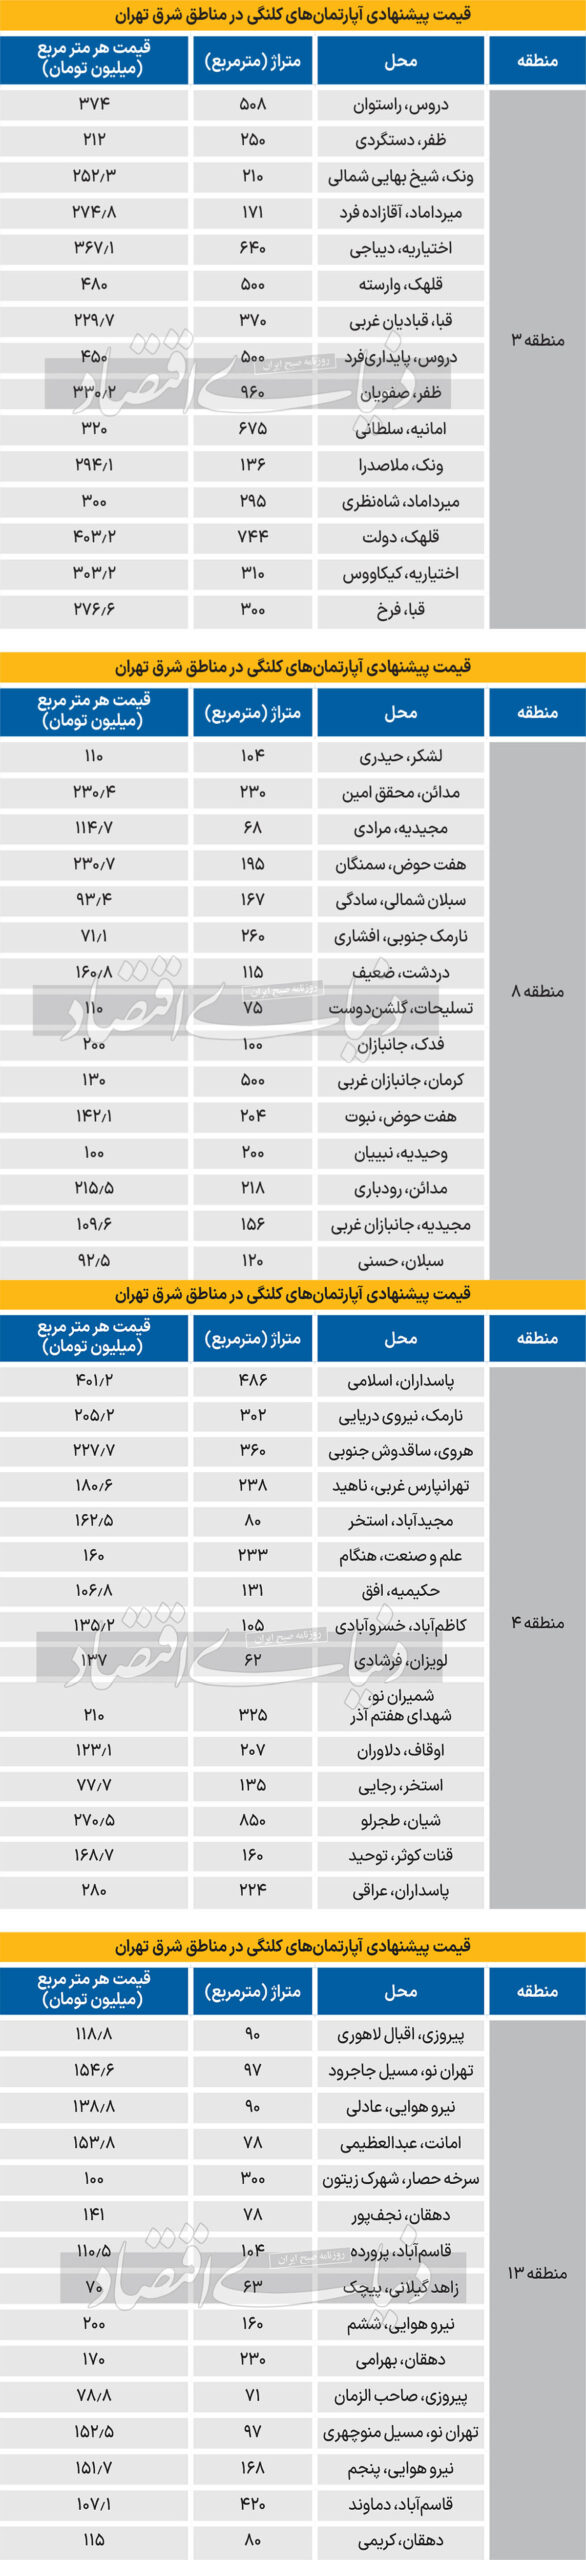 قیمت آپارتمان کلنگی در شرق تهران